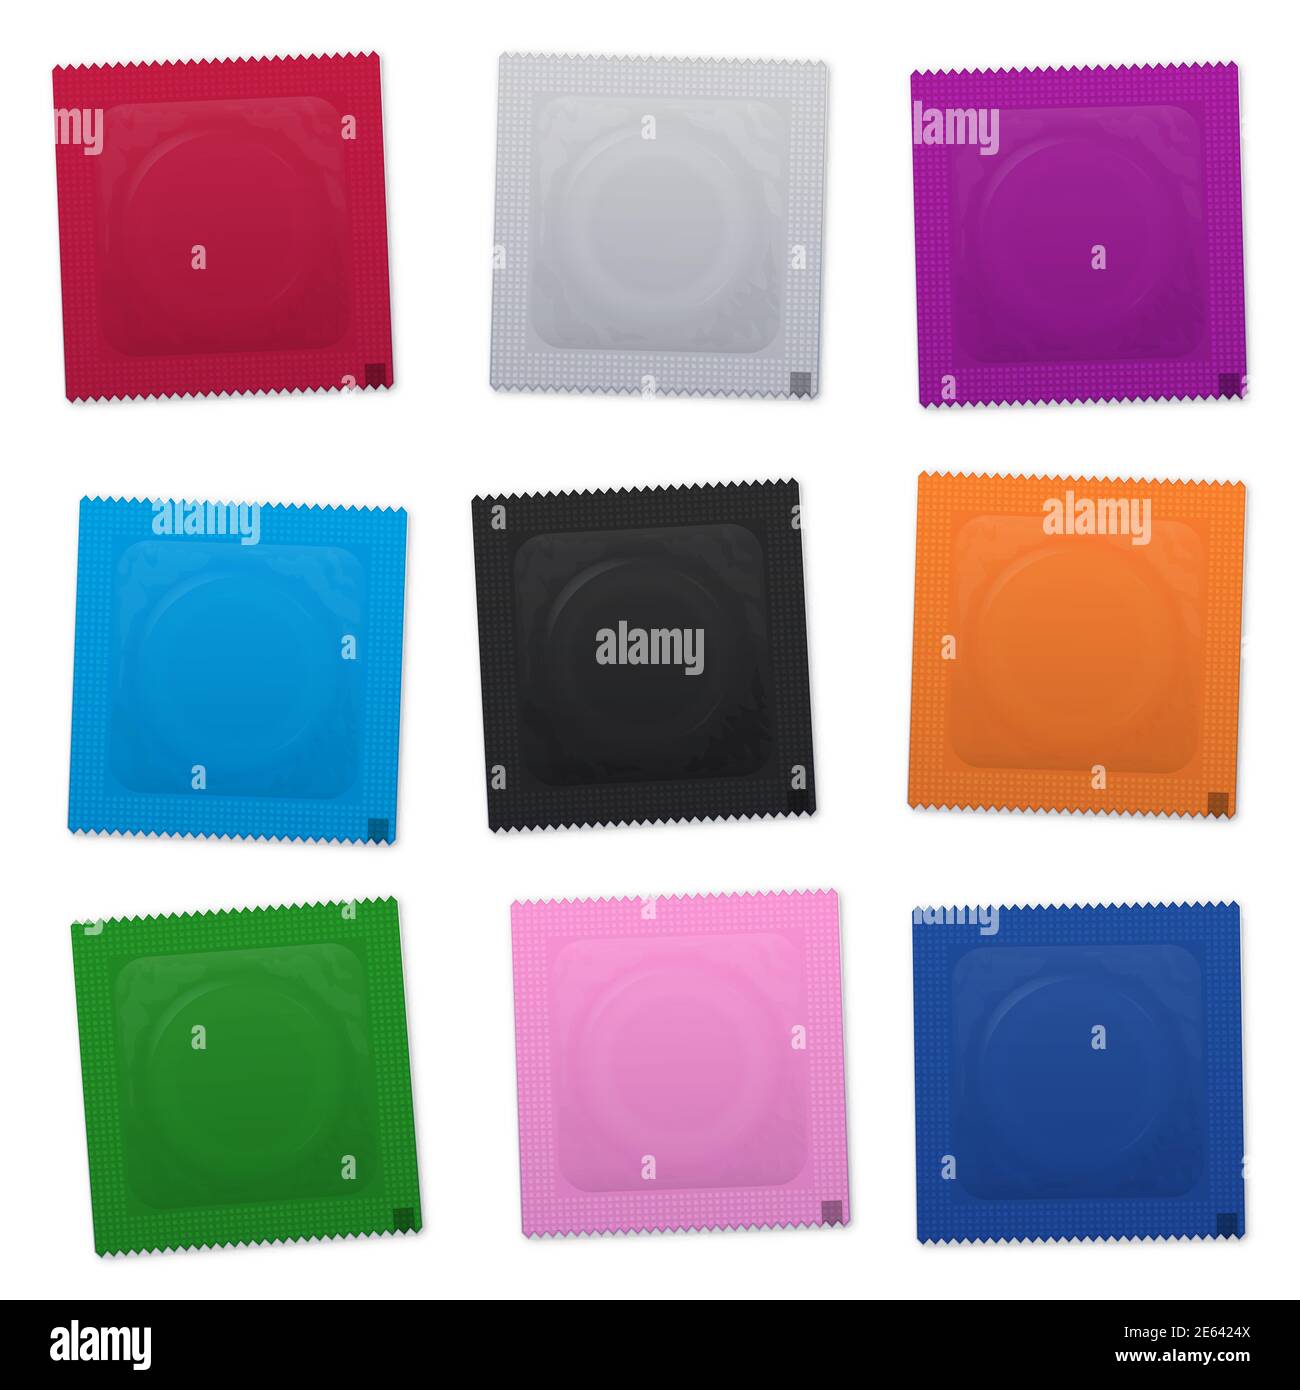 Kit d'emballage de condom coloré. Conservateurs vierges non étiquetés emballés dans des enveloppes en plastique - illustration sur fond blanc. Banque D'Images